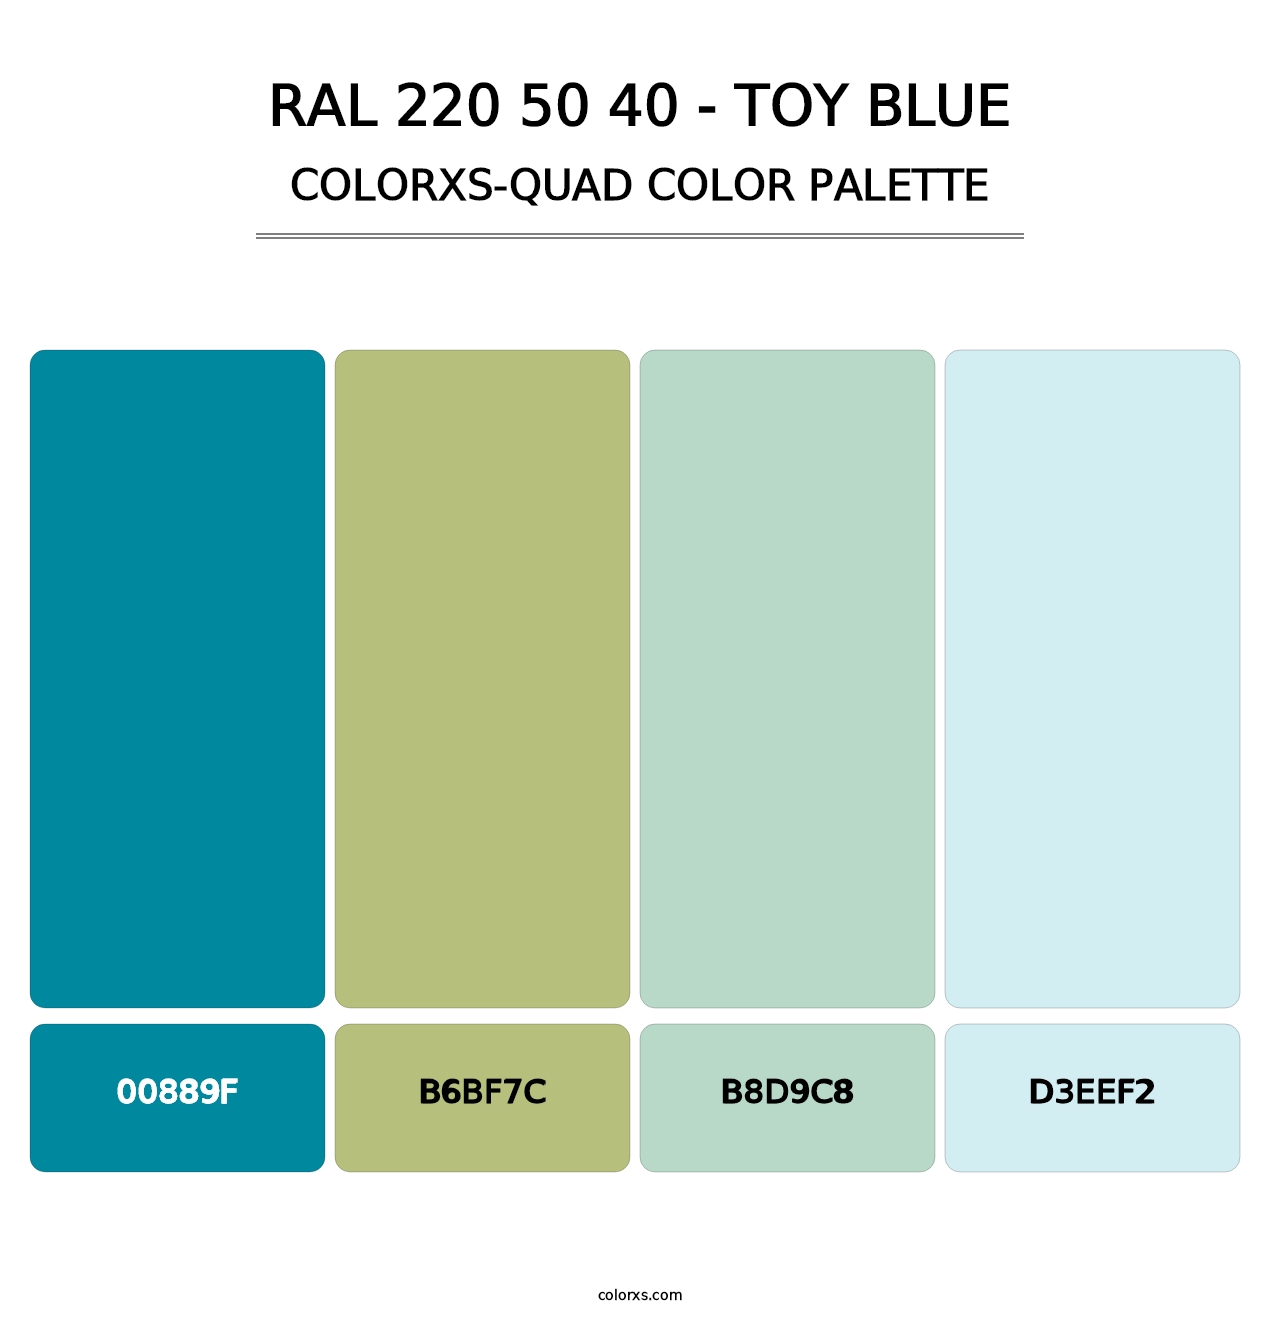 RAL 220 50 40 - Toy Blue - Colorxs Quad Palette